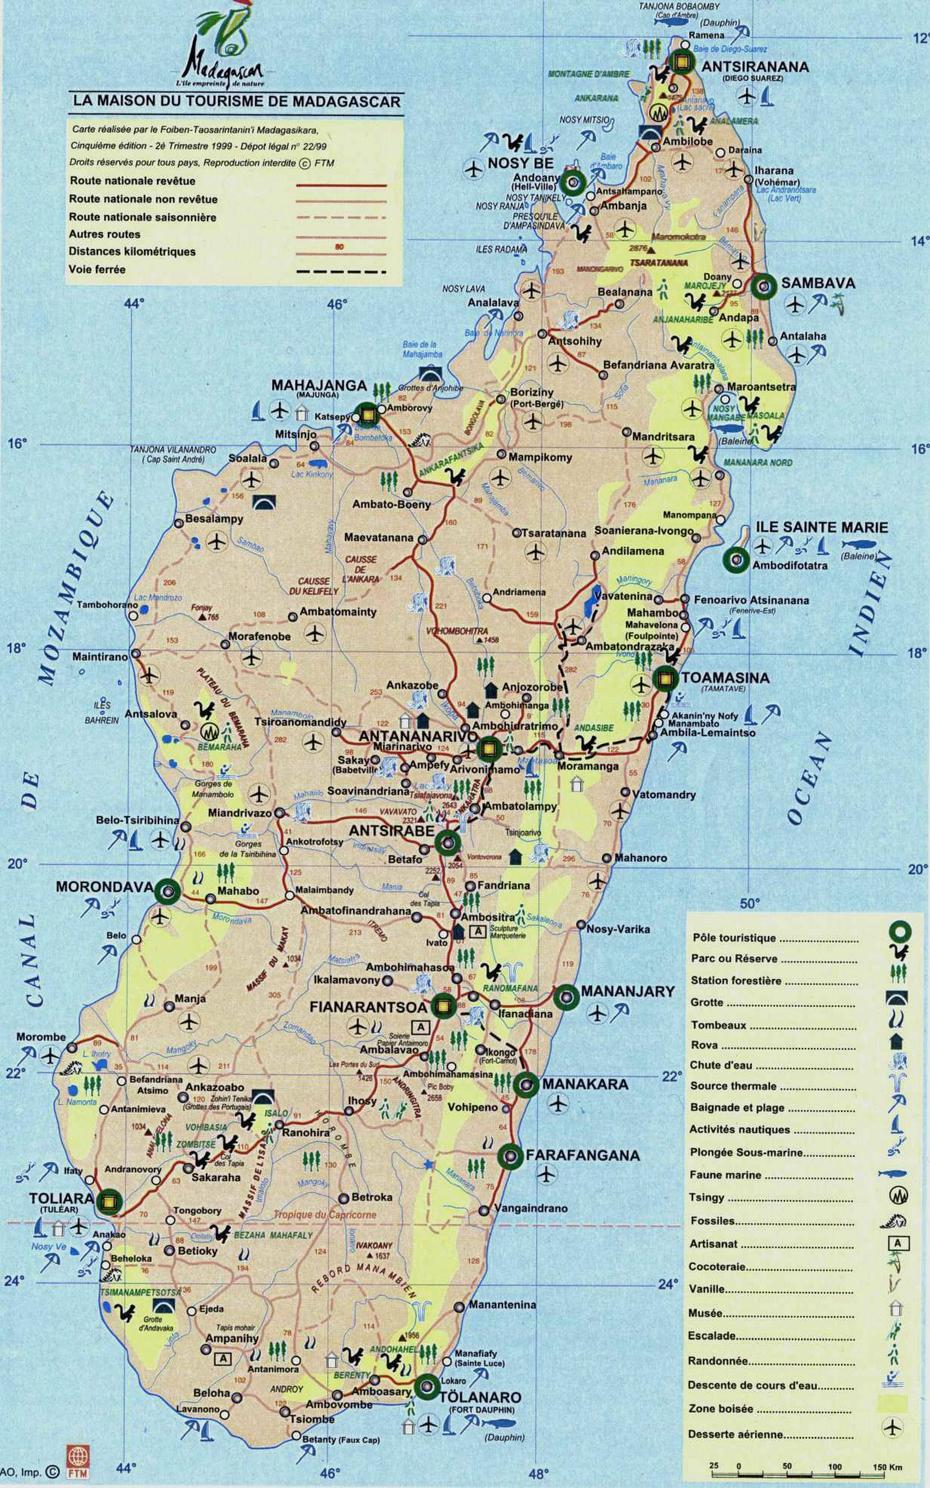 Madagaskar Touristische Karte, Ambinanisakana, Madagascar, Madagascar Travel, Madagascar Country